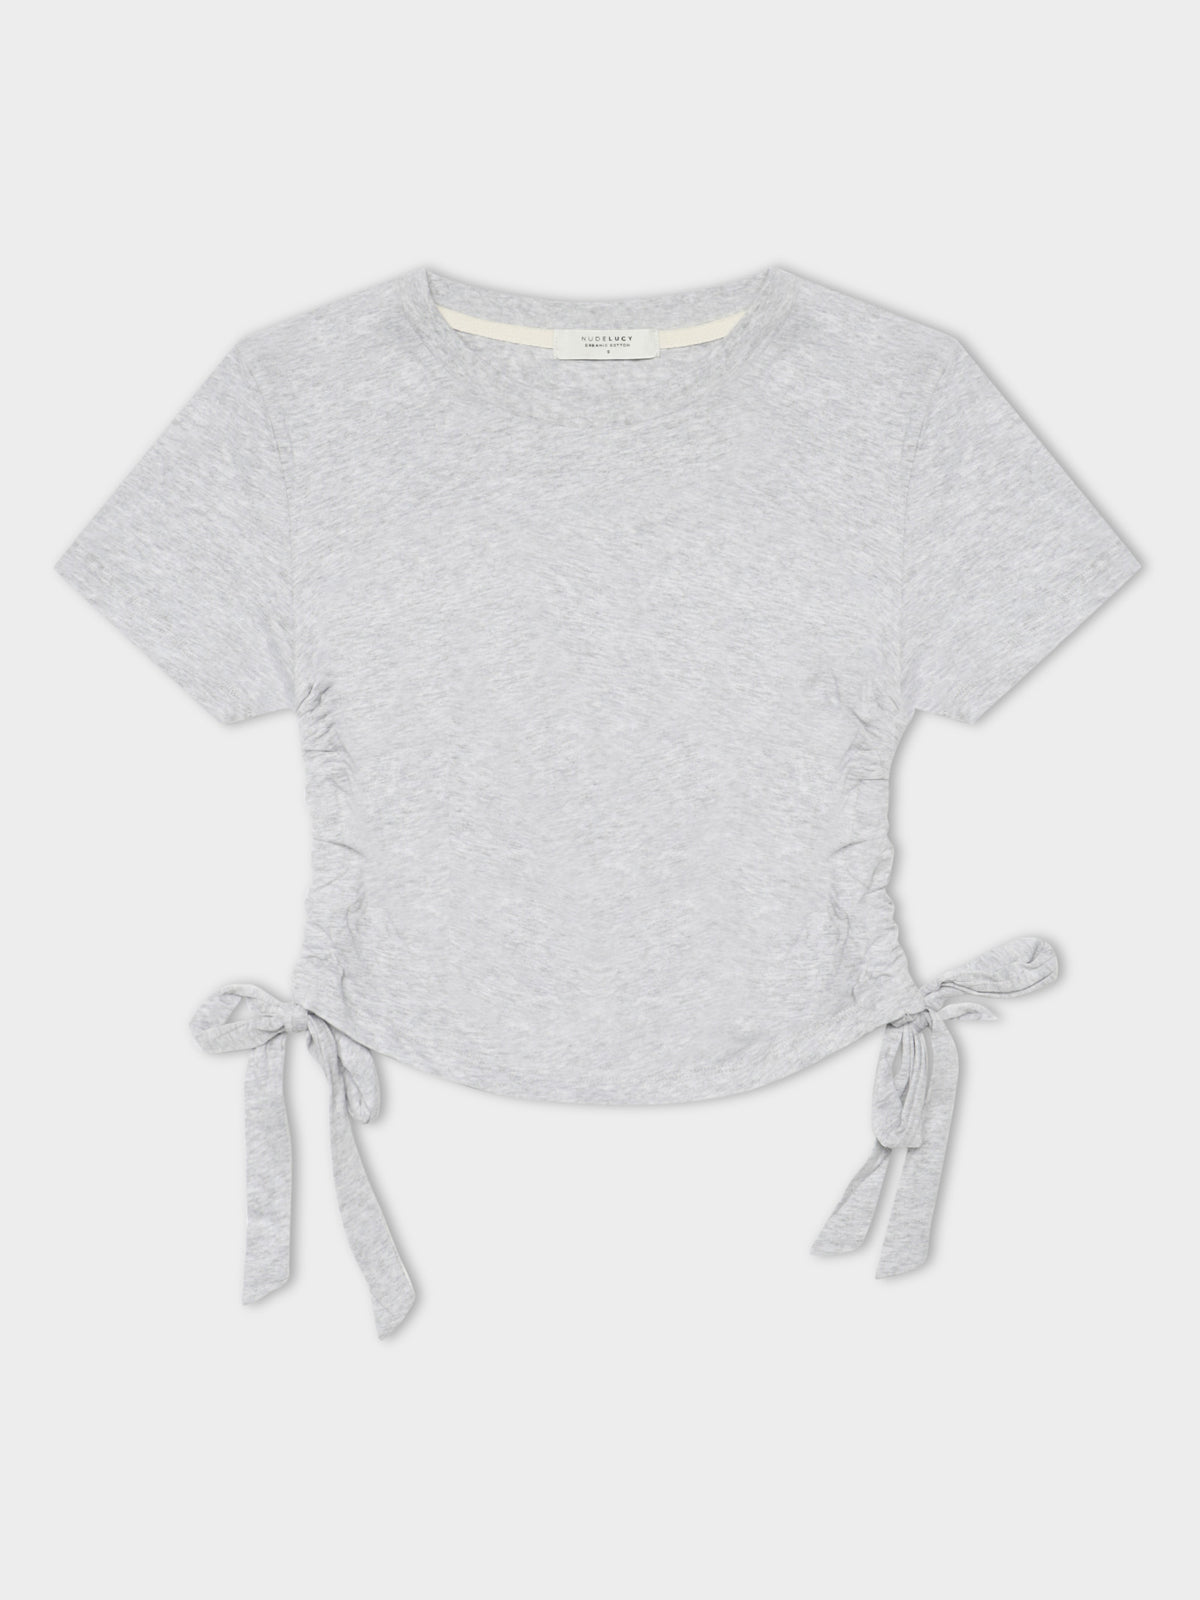 Rowan Drawstring T-Shirt in Grey